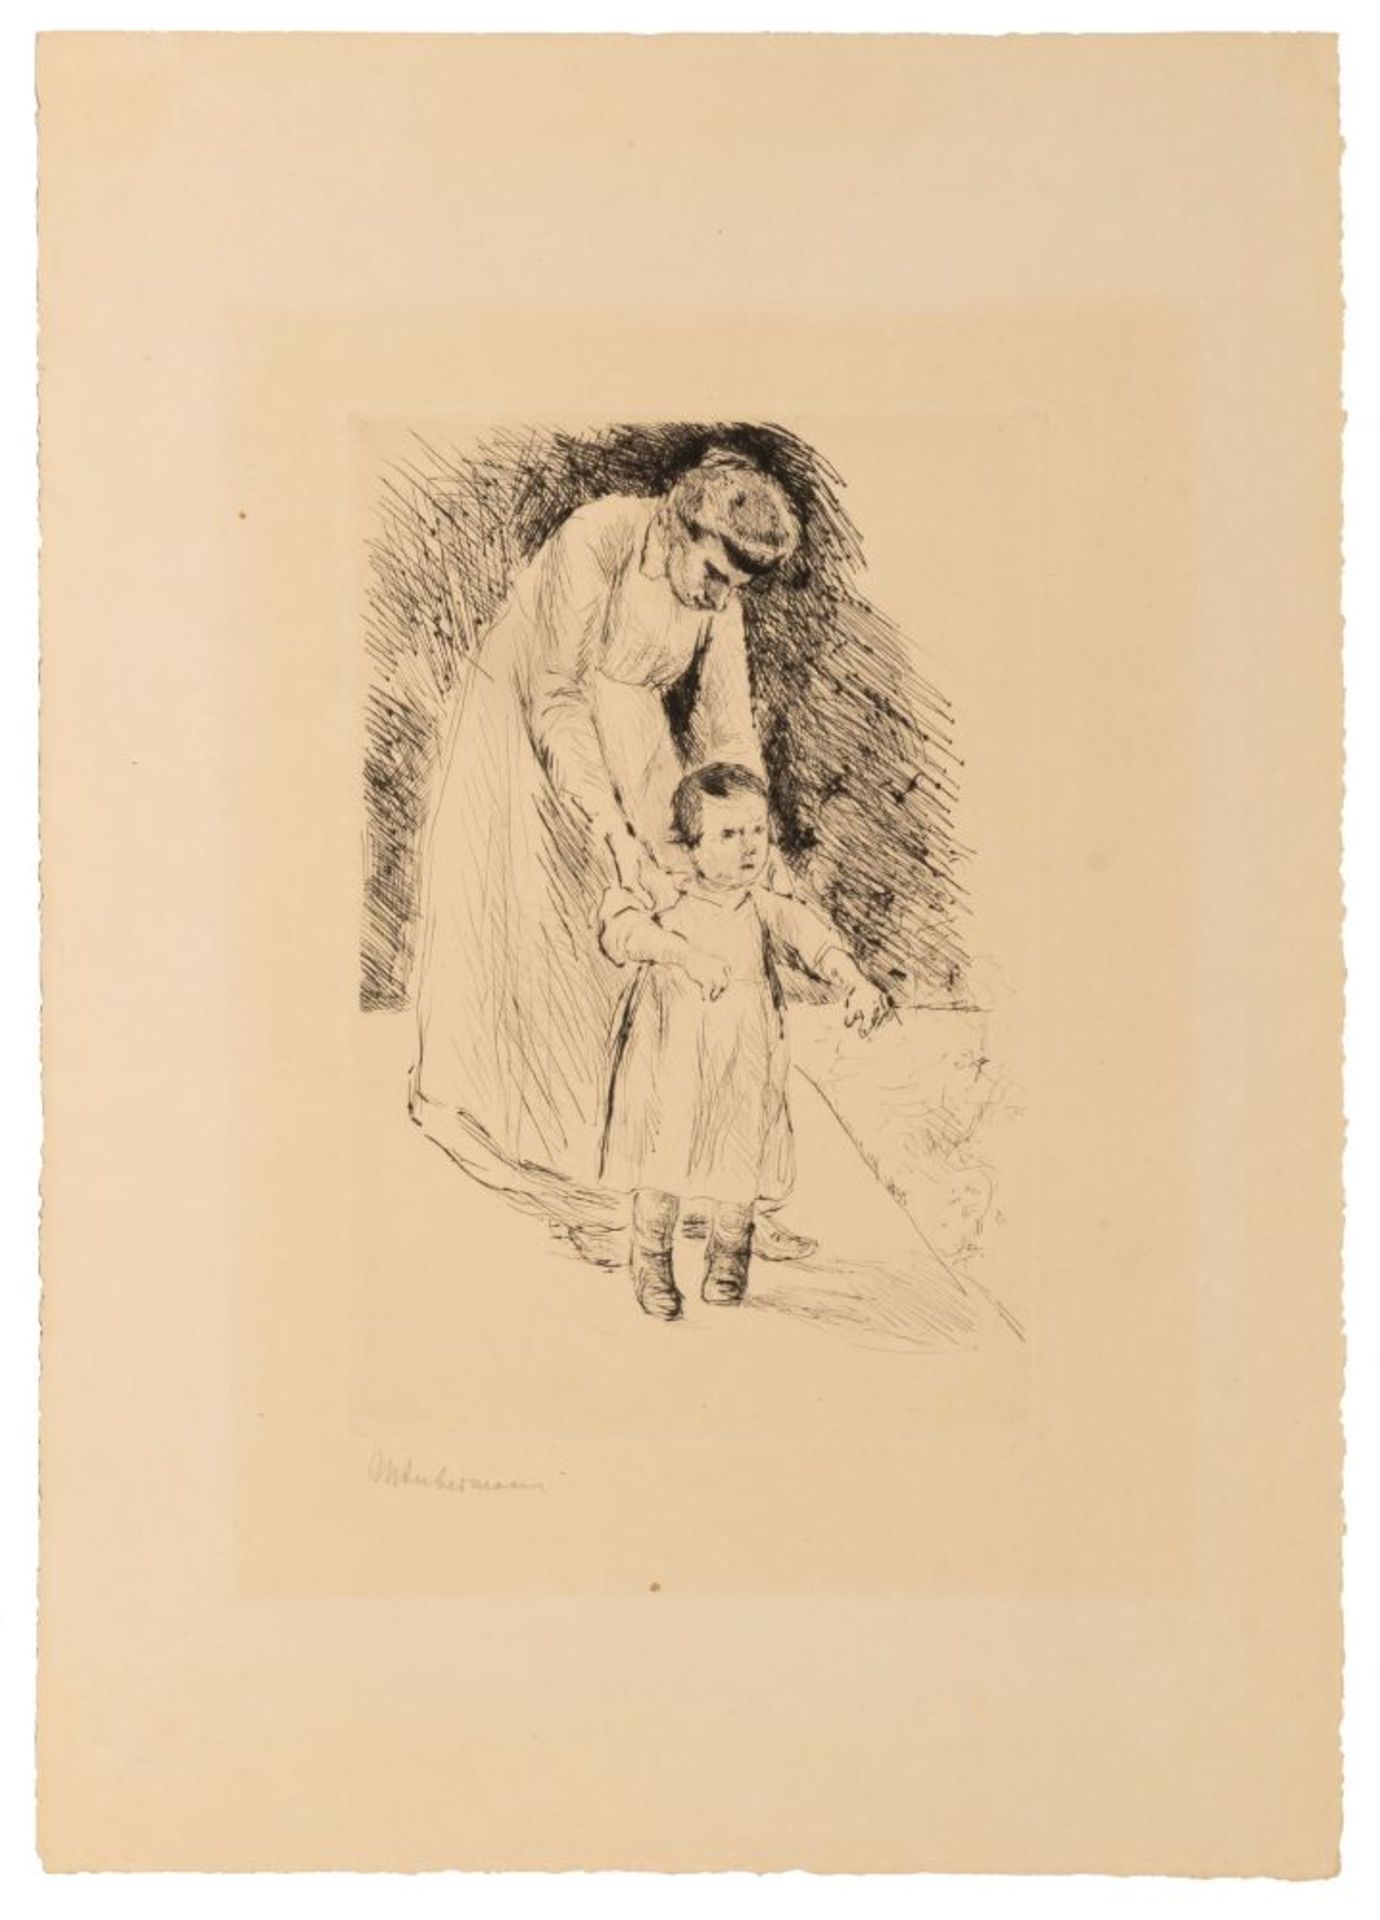 Liebermann, Max (Berlin 1847 - Berlin 1935). Guardian with Standing Child.